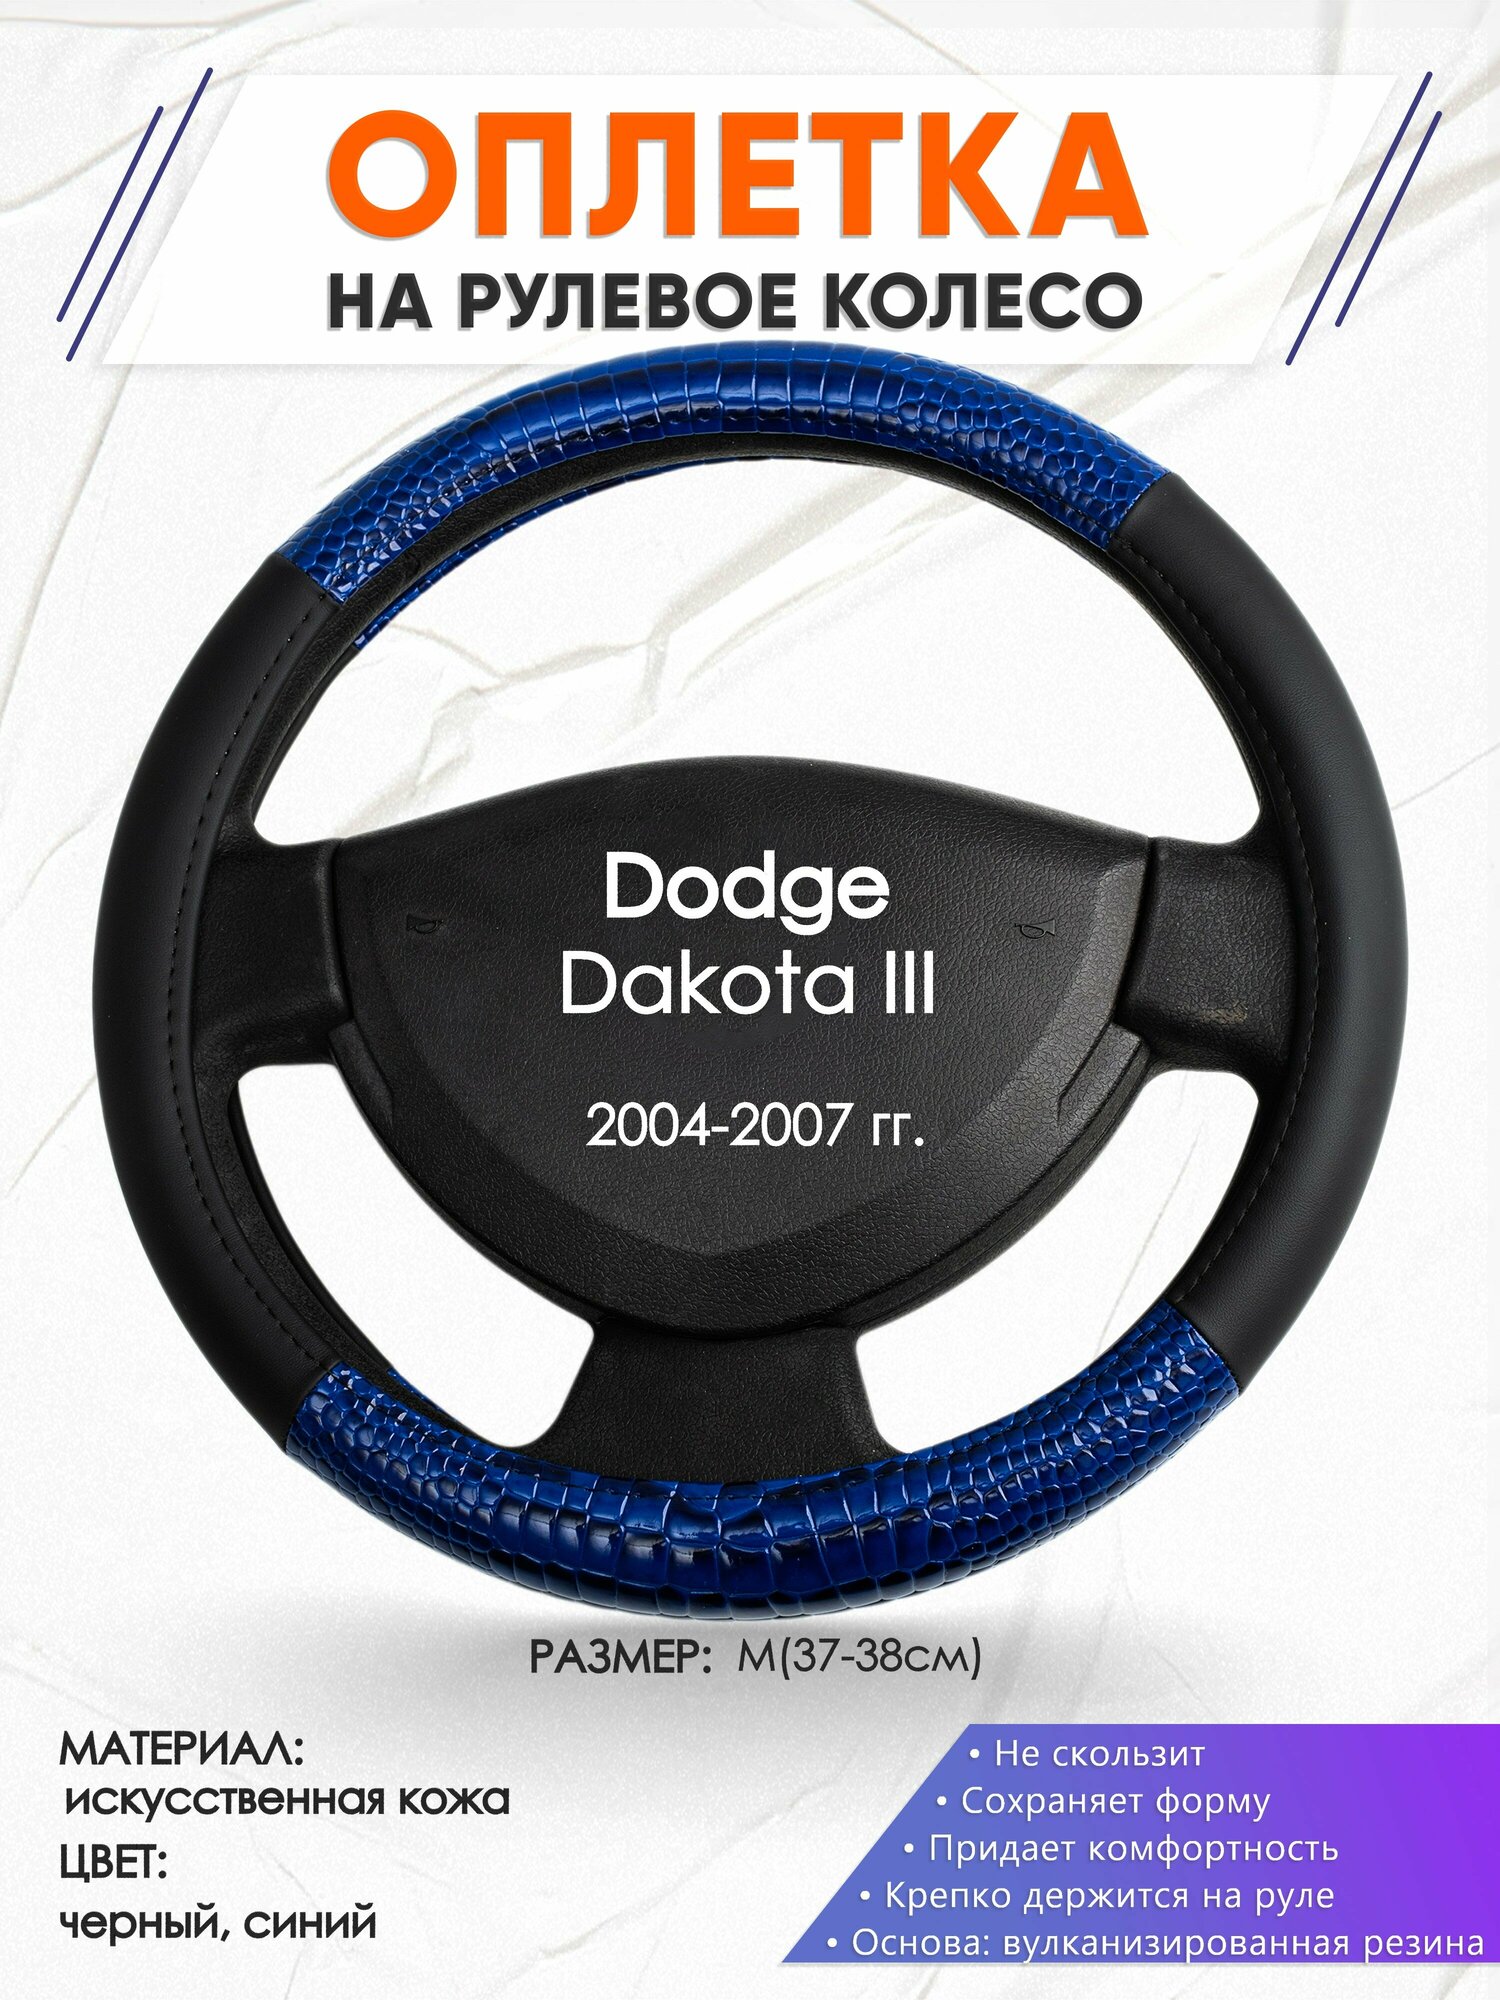 Оплетка наруль для Dodge Dakota 3(Додж Дакота 3) 2004-2007 годов выпуска размер M(37-38см) Искусственная кожа 61